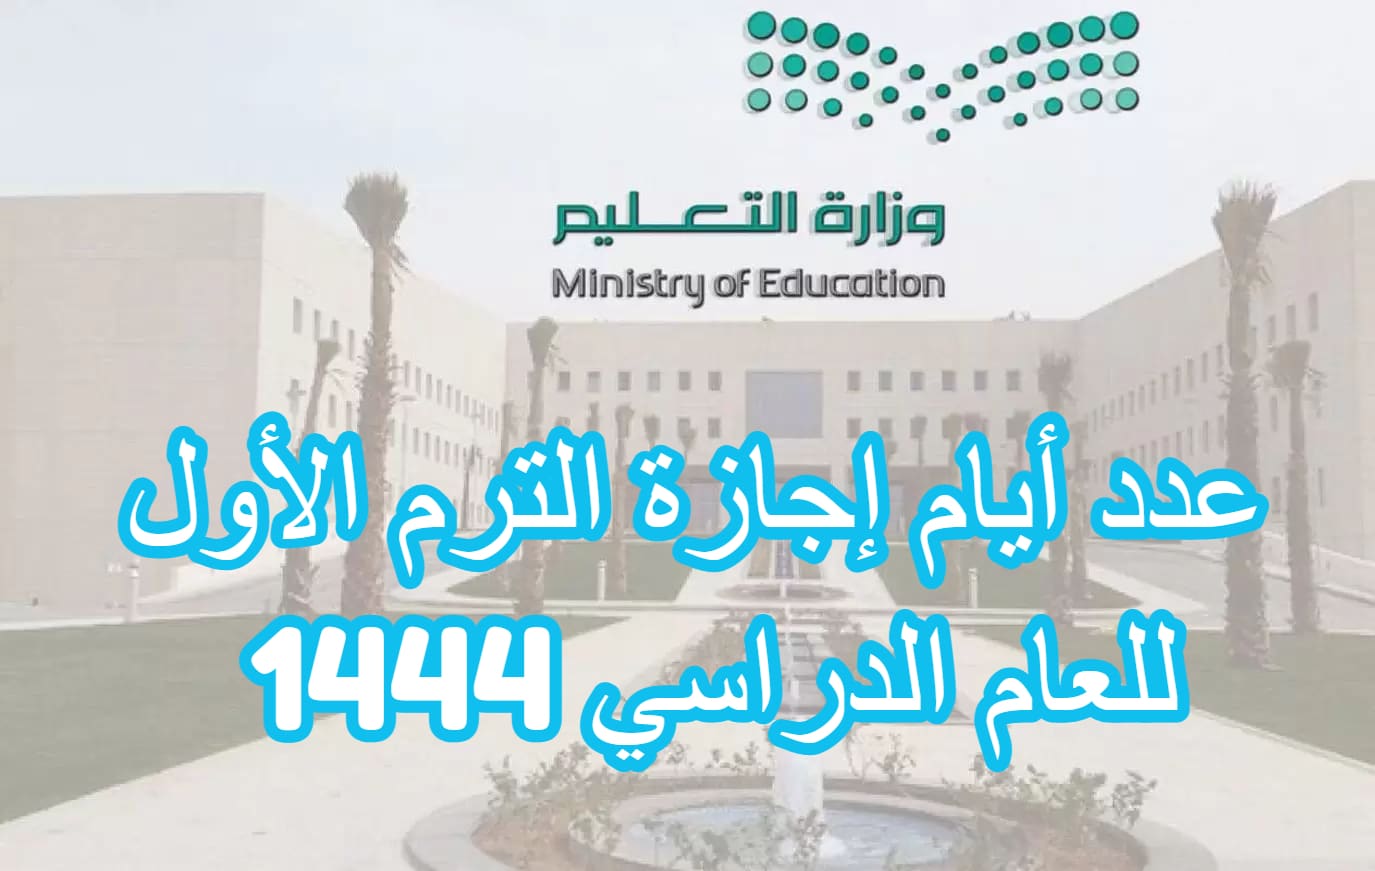 عدد أيام إجازة الترم الأول للعام الدراسي 1444 في السعودية وفق الخطة الزمنية لتقويم الدراسة